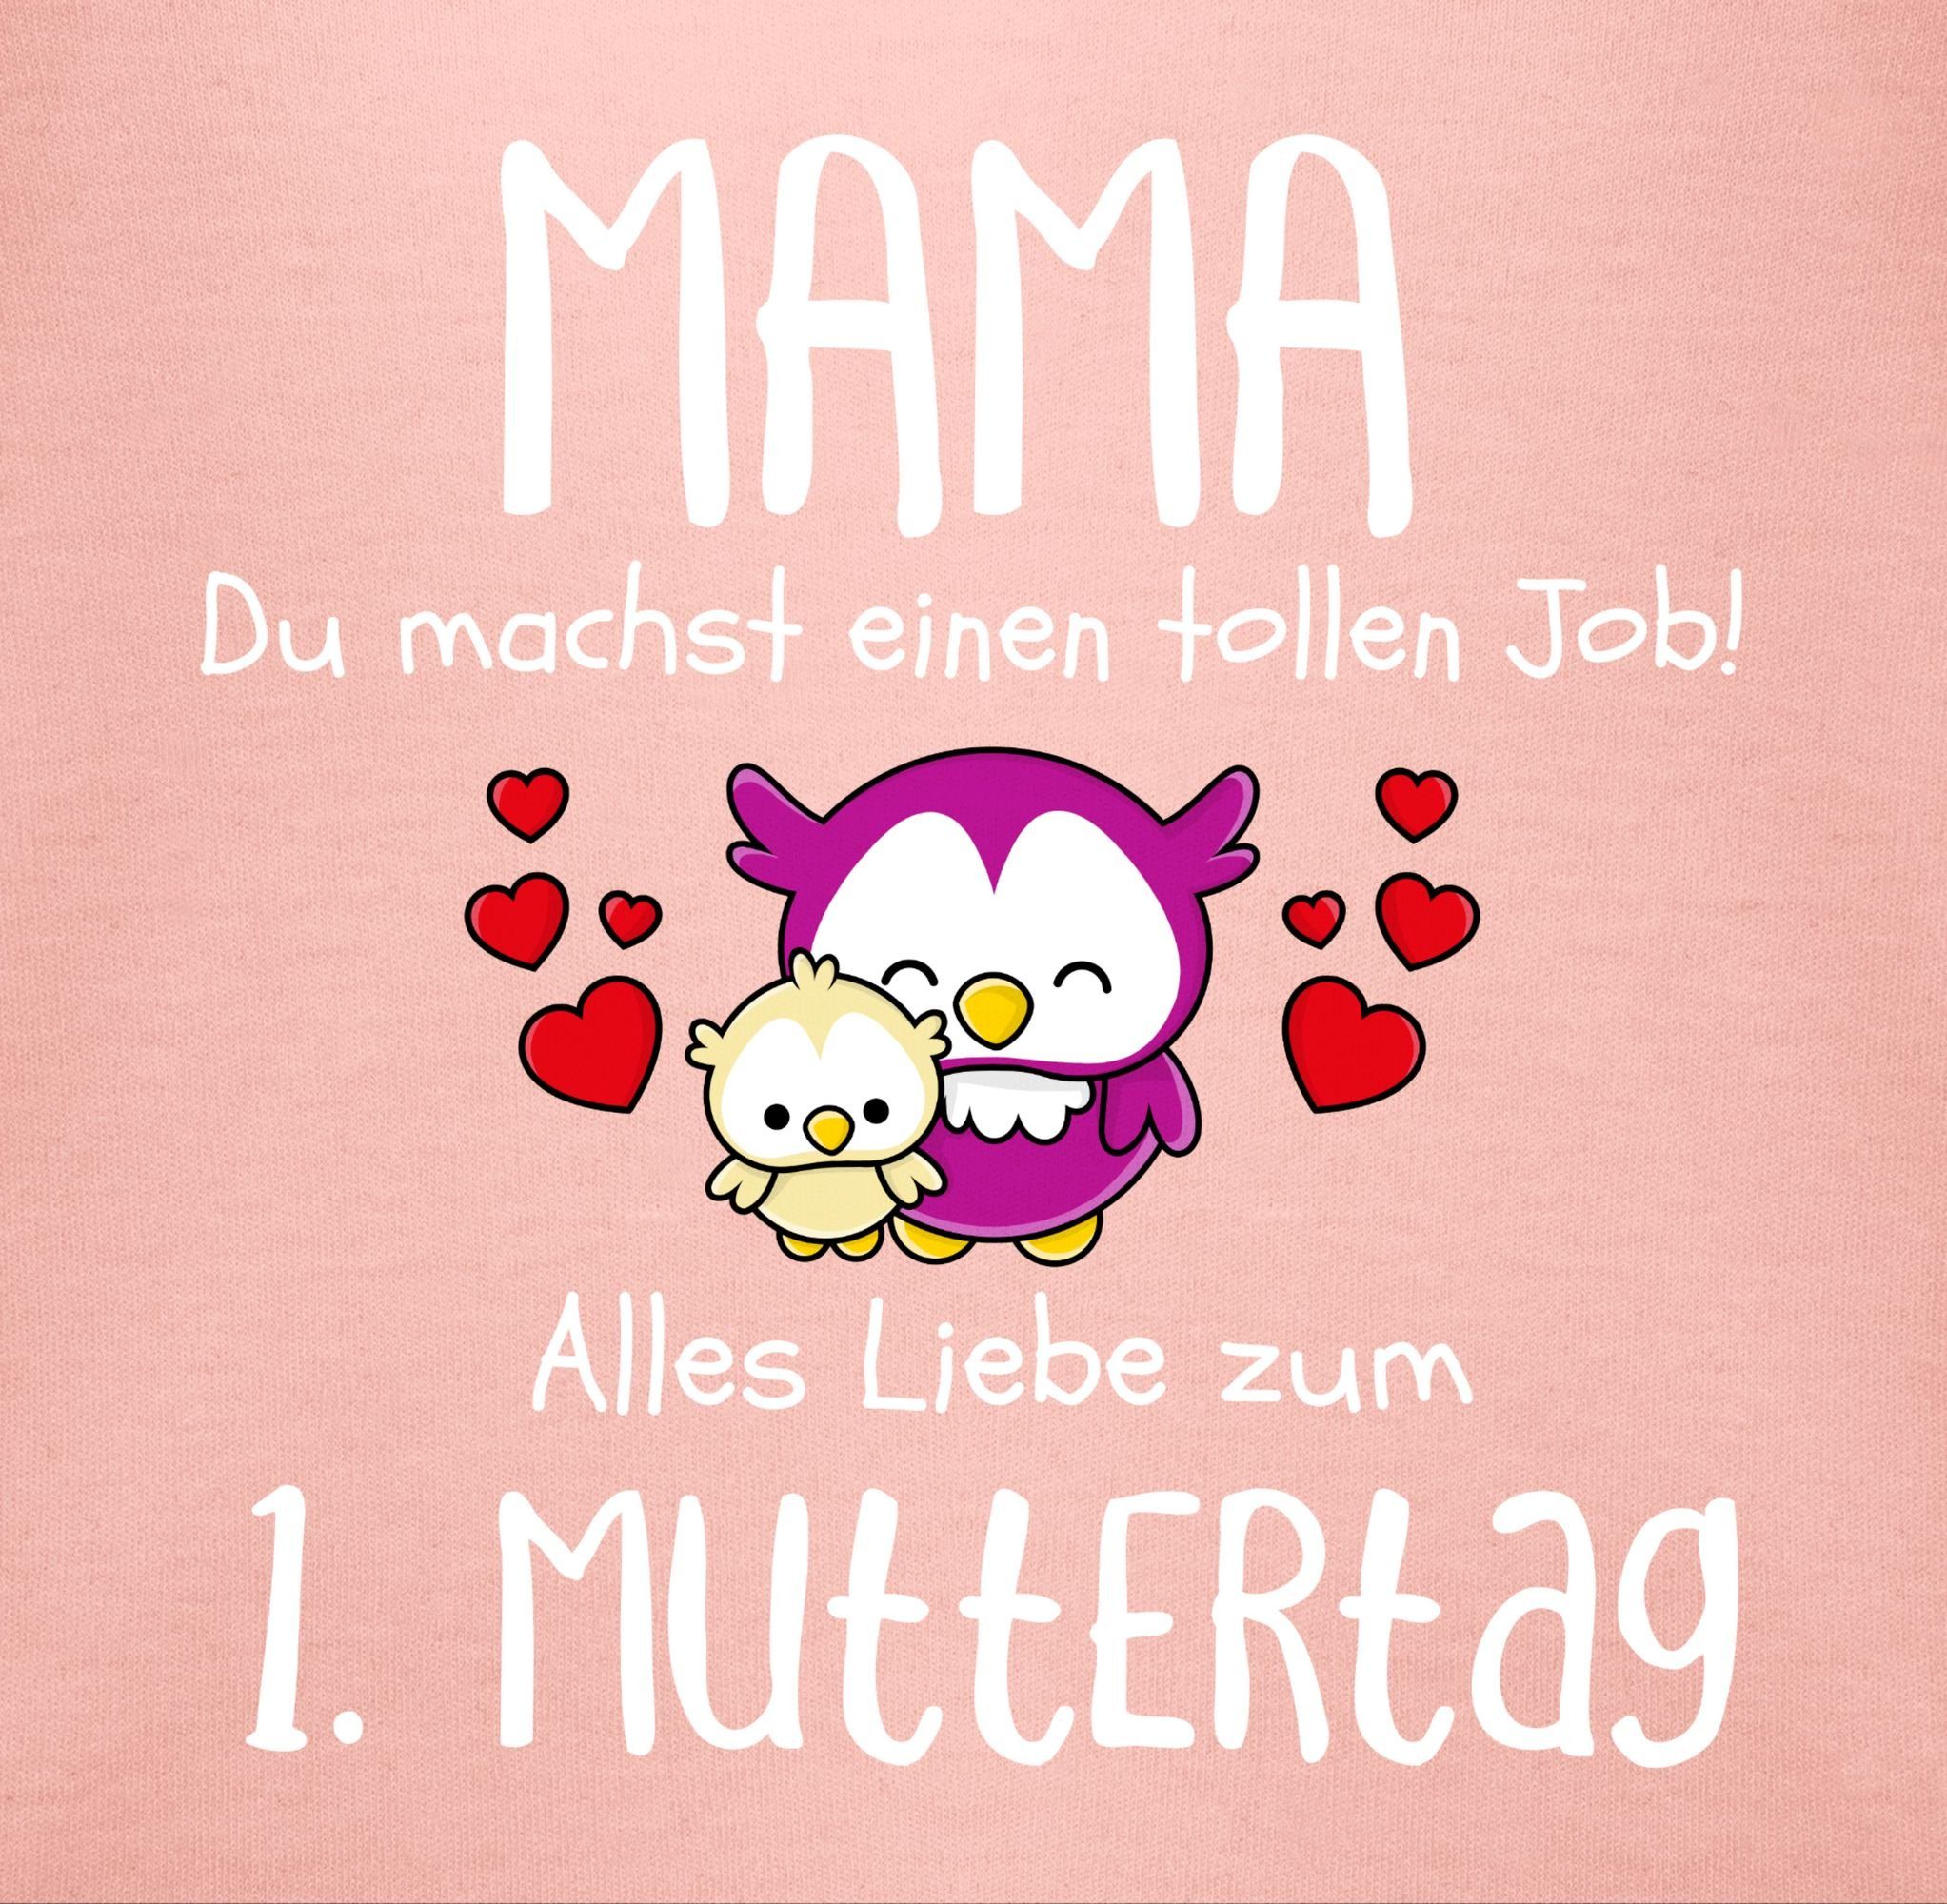 Mama einen Muttertag machst 1. T-Shirt tollen I Babyrosa Muttertagsgeschenk 1 Job du Shirtracer